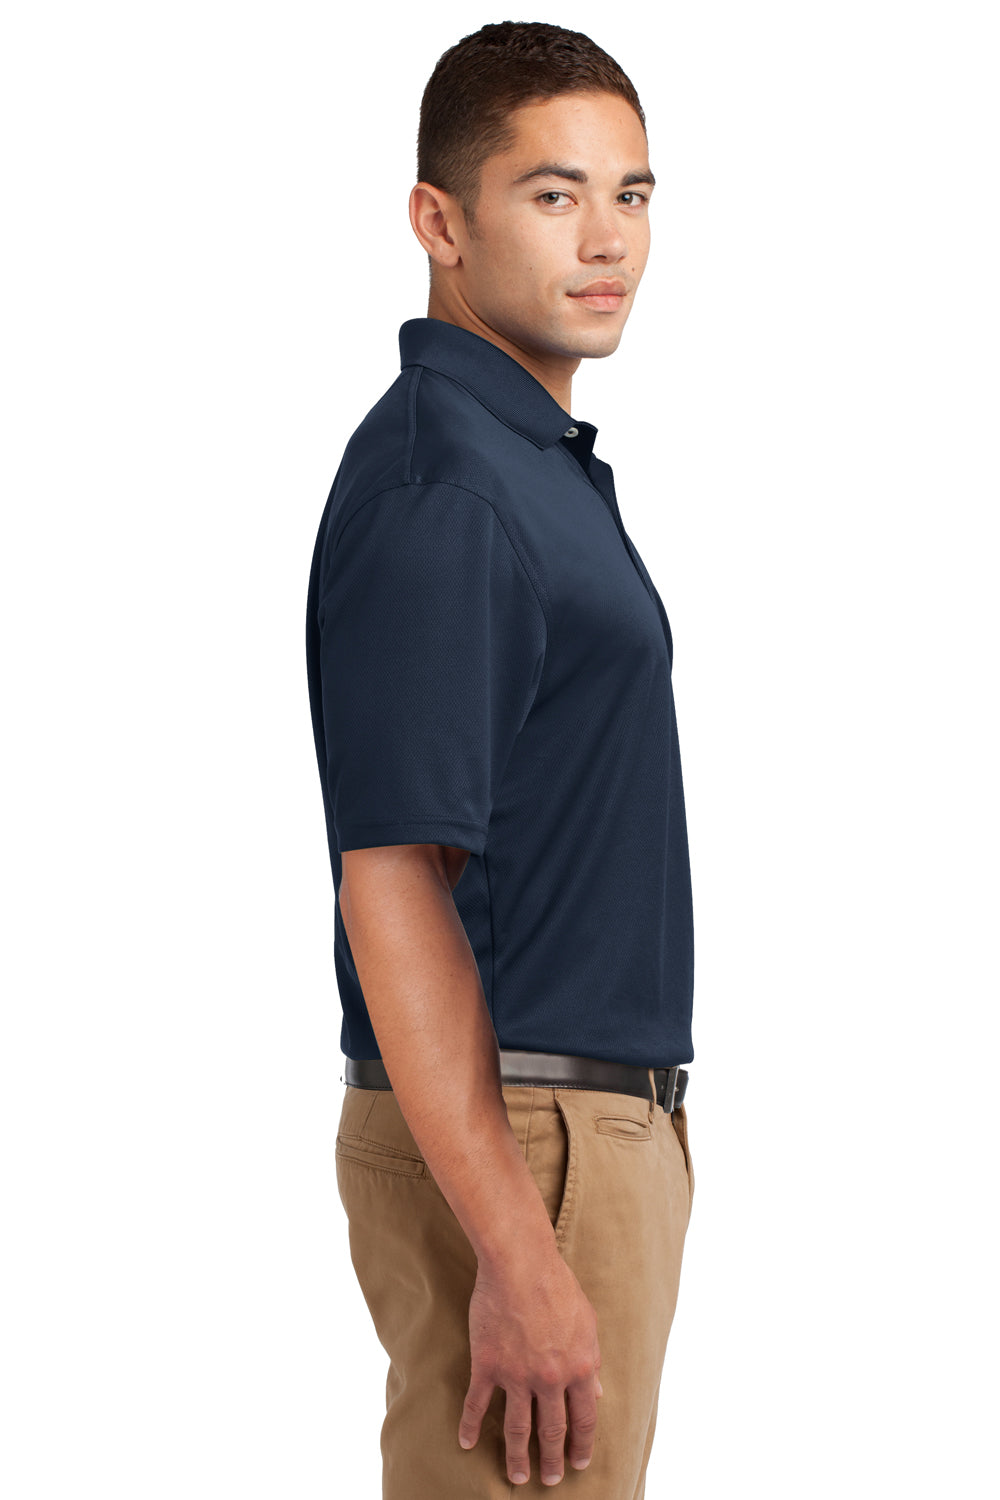 Sport-Tek K469 Mens Dri-Mesh Moisture Wicking Short Sleeve Polo Shirt Navy Blue Side